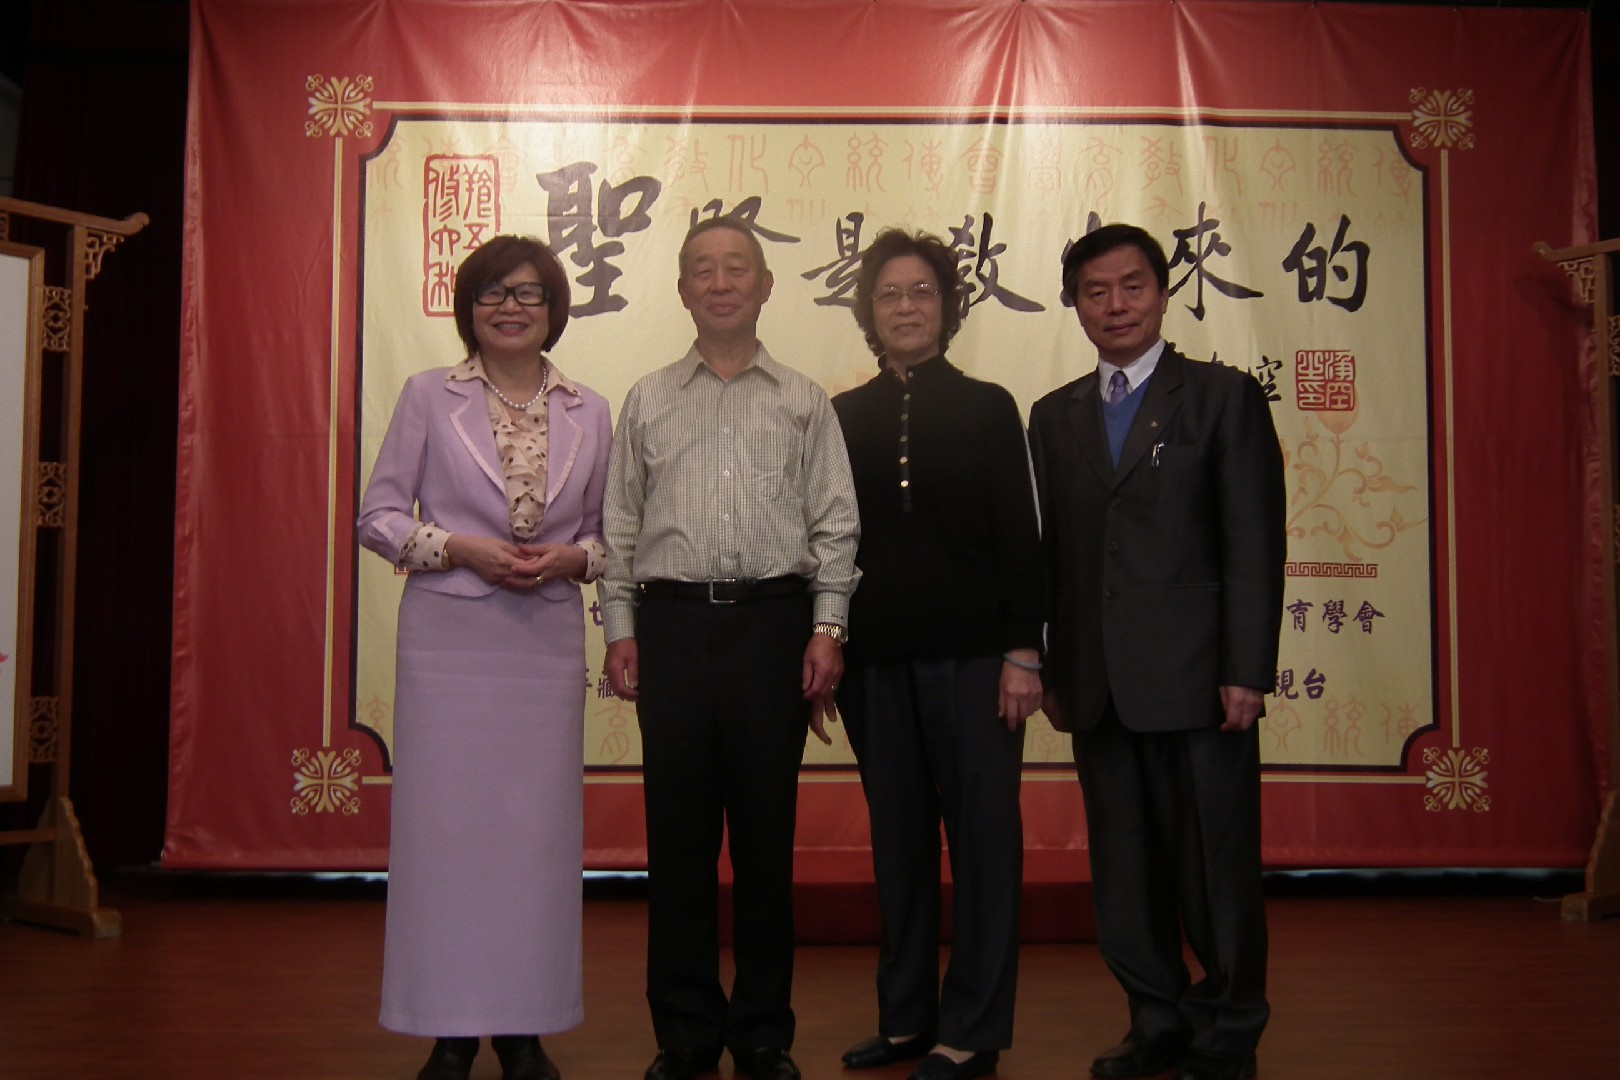 追溯中華文化的命脈 一月八日達拉斯（Dallas）僑民領事夫婦來訪